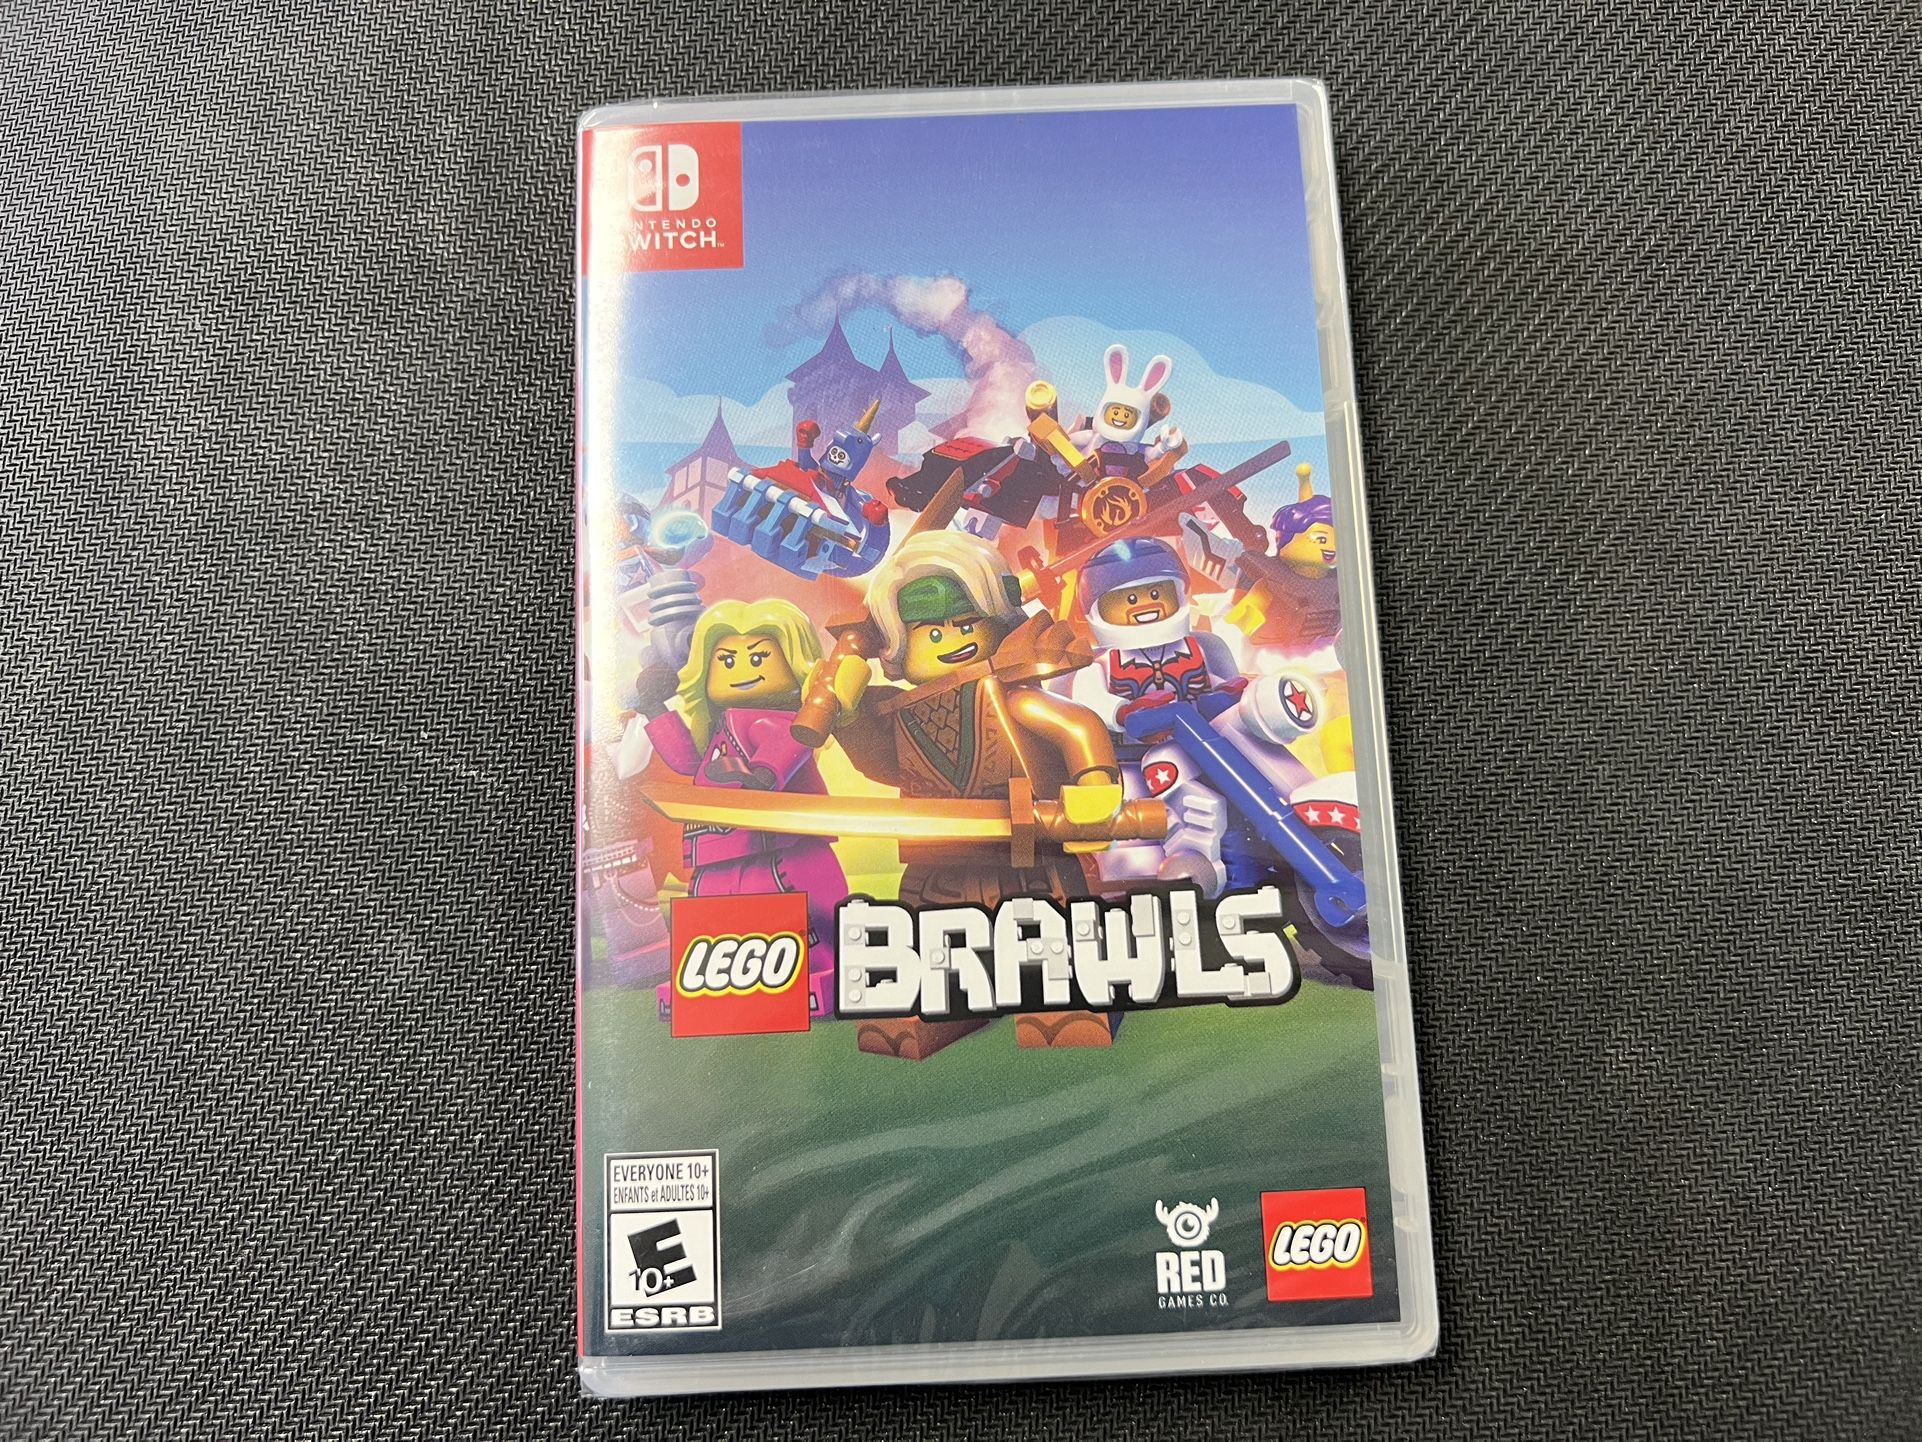 Lego Brawls - Nintendo Switch New